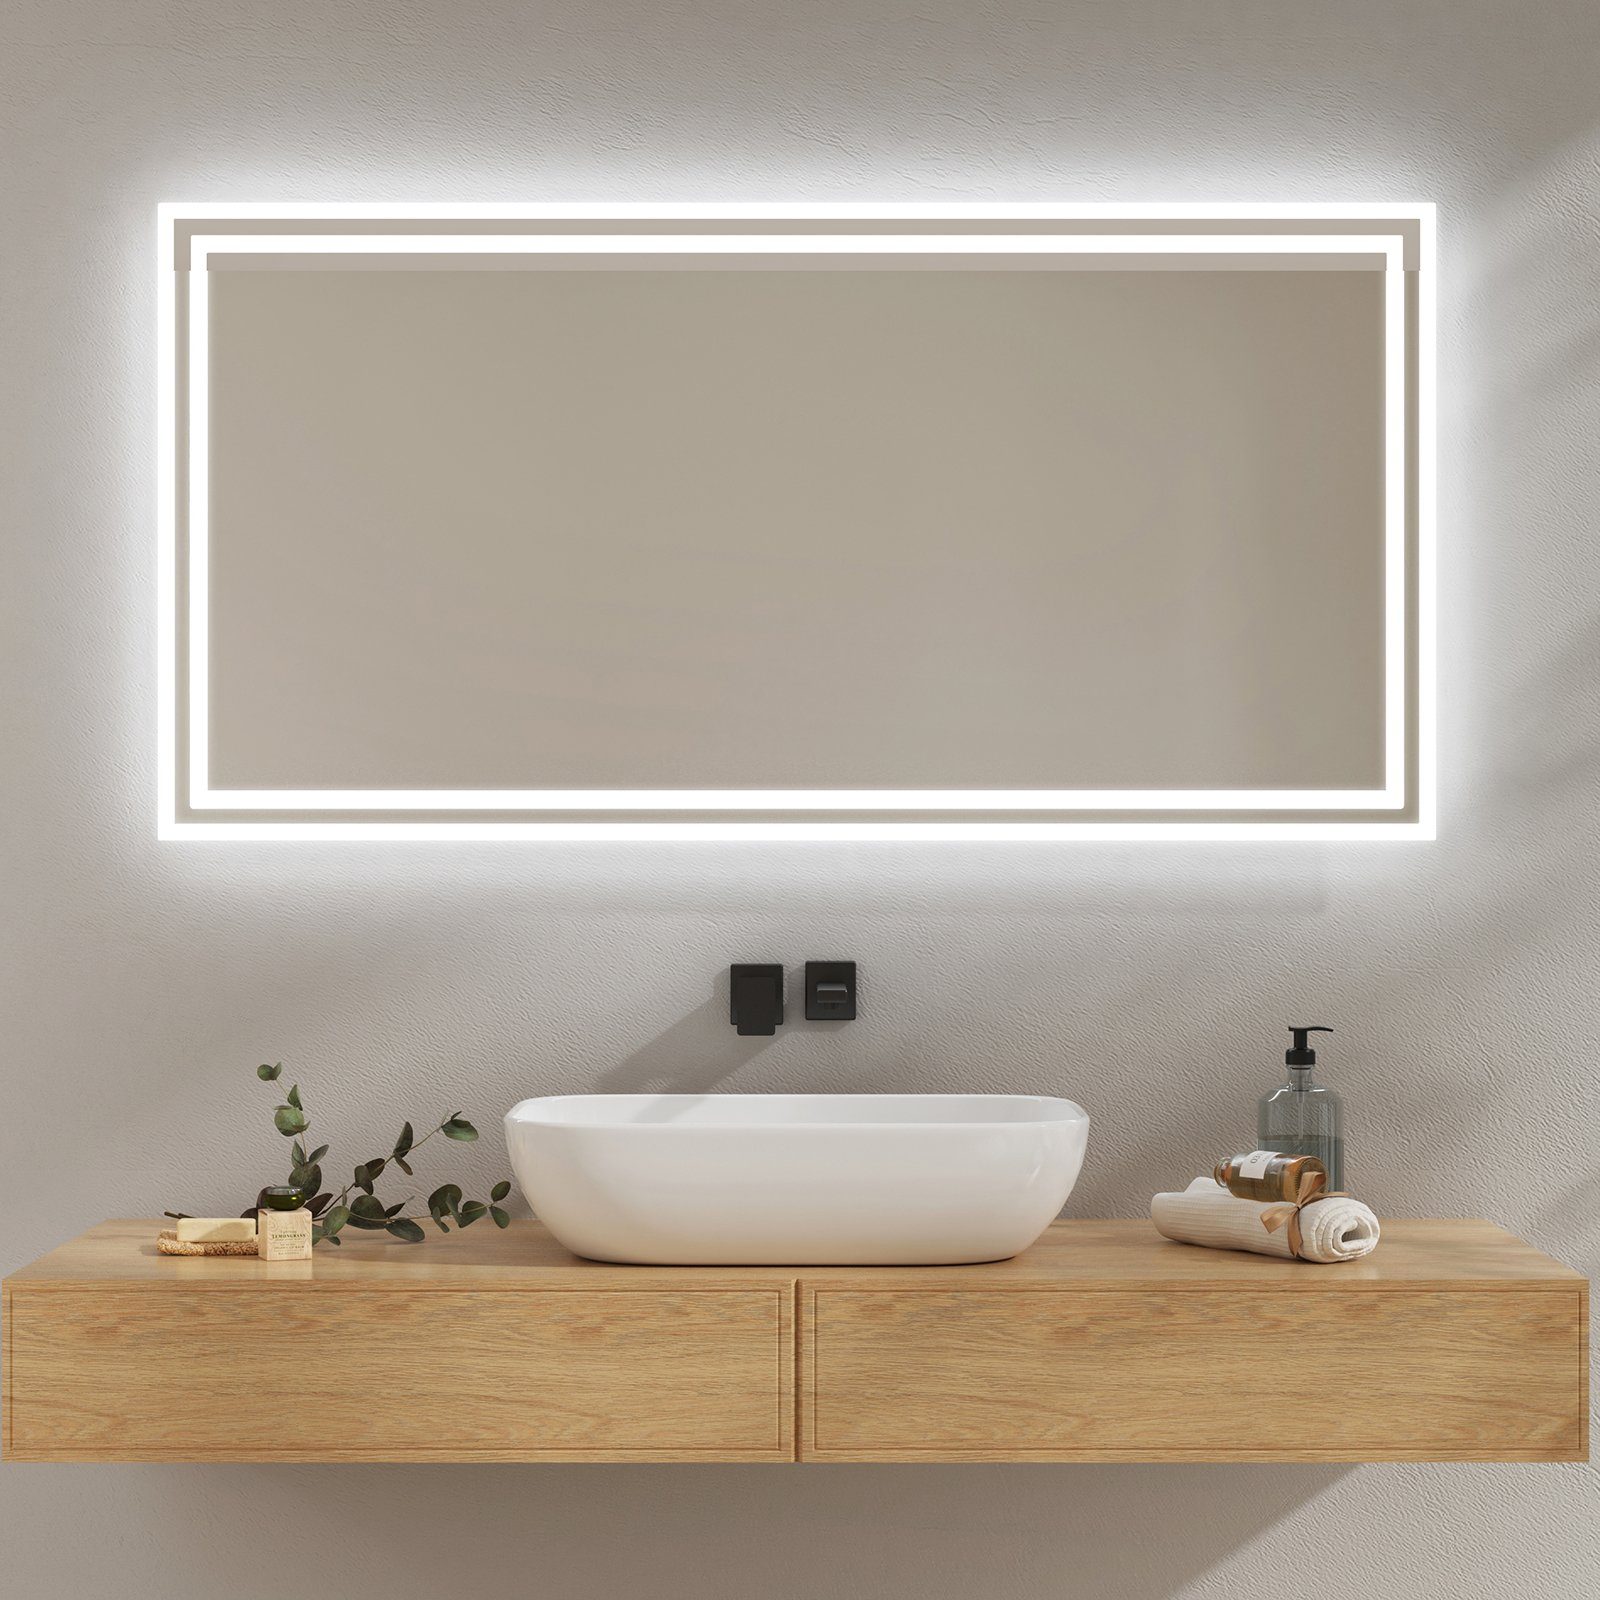 EMKE Badspiegel Badspiegel mit Beleuchtung LED Badezimmerspiegel Wandspiegel, Beschlagfrei, 2 Farben des Lichts, Druckknopfschalter